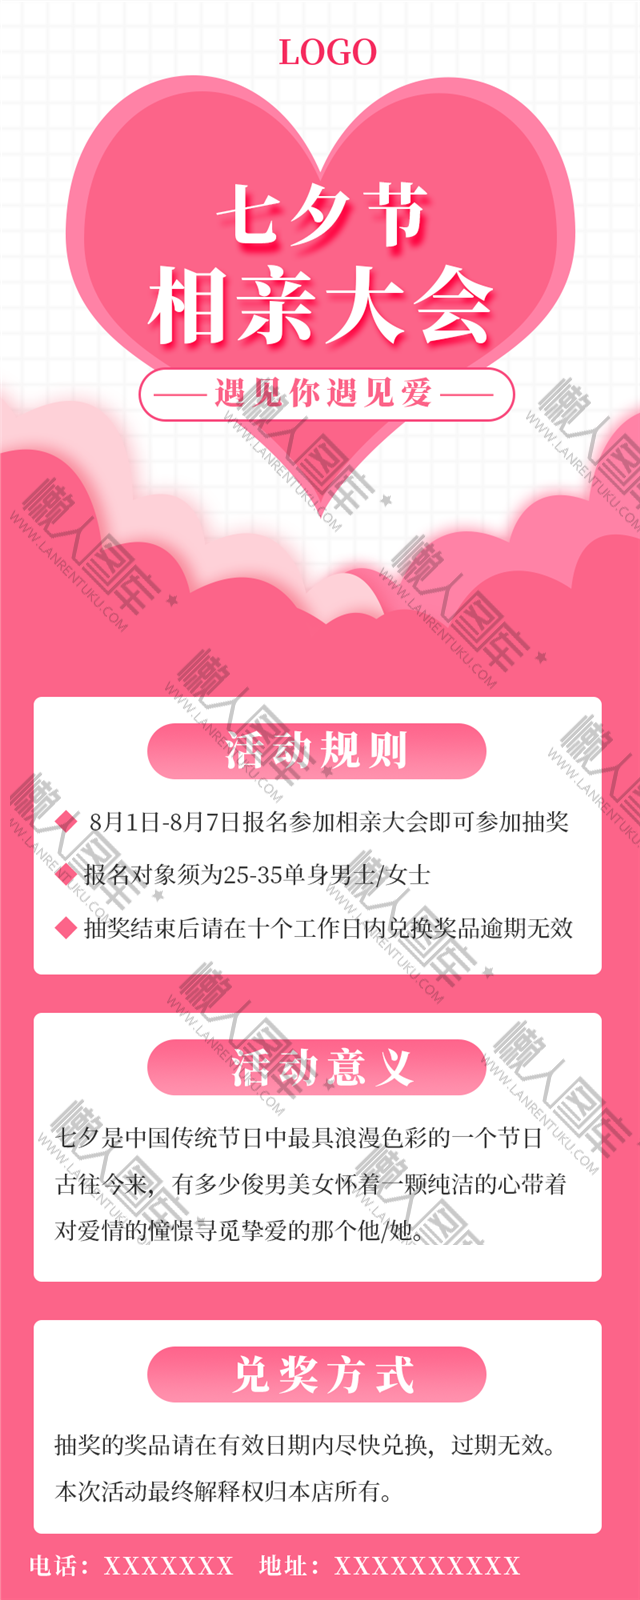 七夕节相亲大会活动宣传手机海报